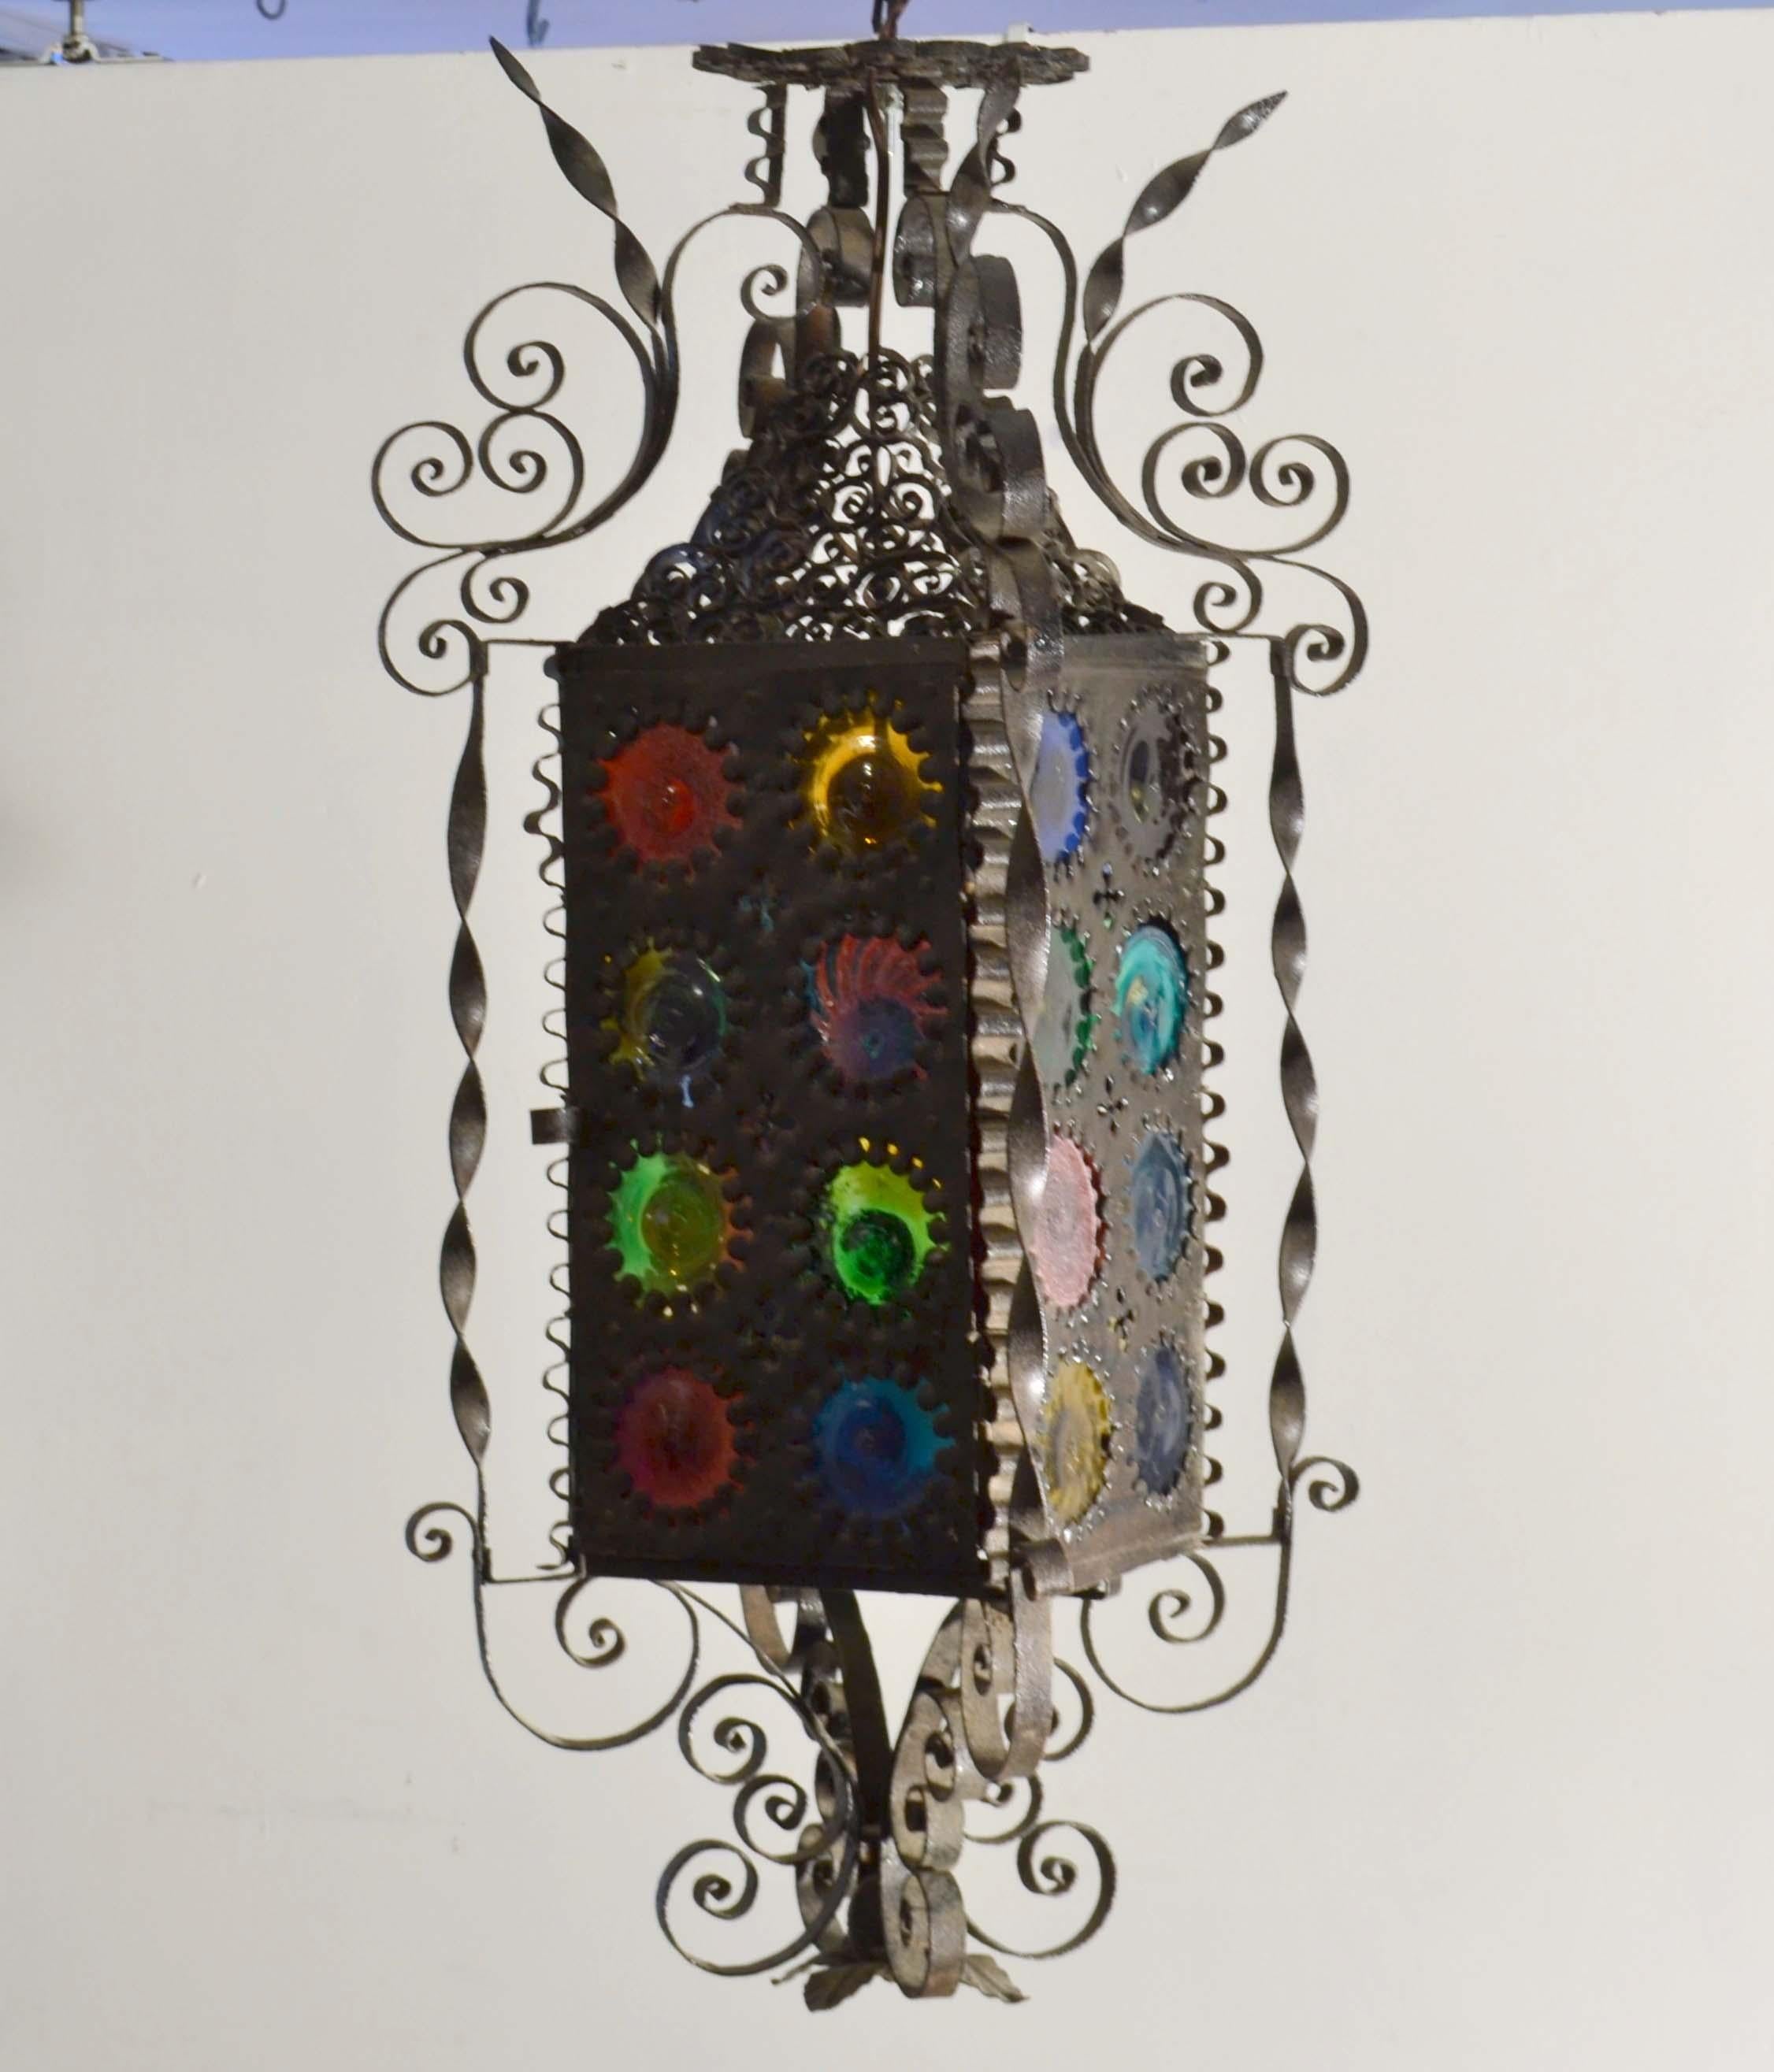 Lanterne italienne en fer forgé de la fin du 19e siècle avec ses vitres rondes multicolores. Chaque disque est unique, soufflé et coloré à la main, probablement originaire de l'île vénitienne de Murano. La balise est généralement placée dans un